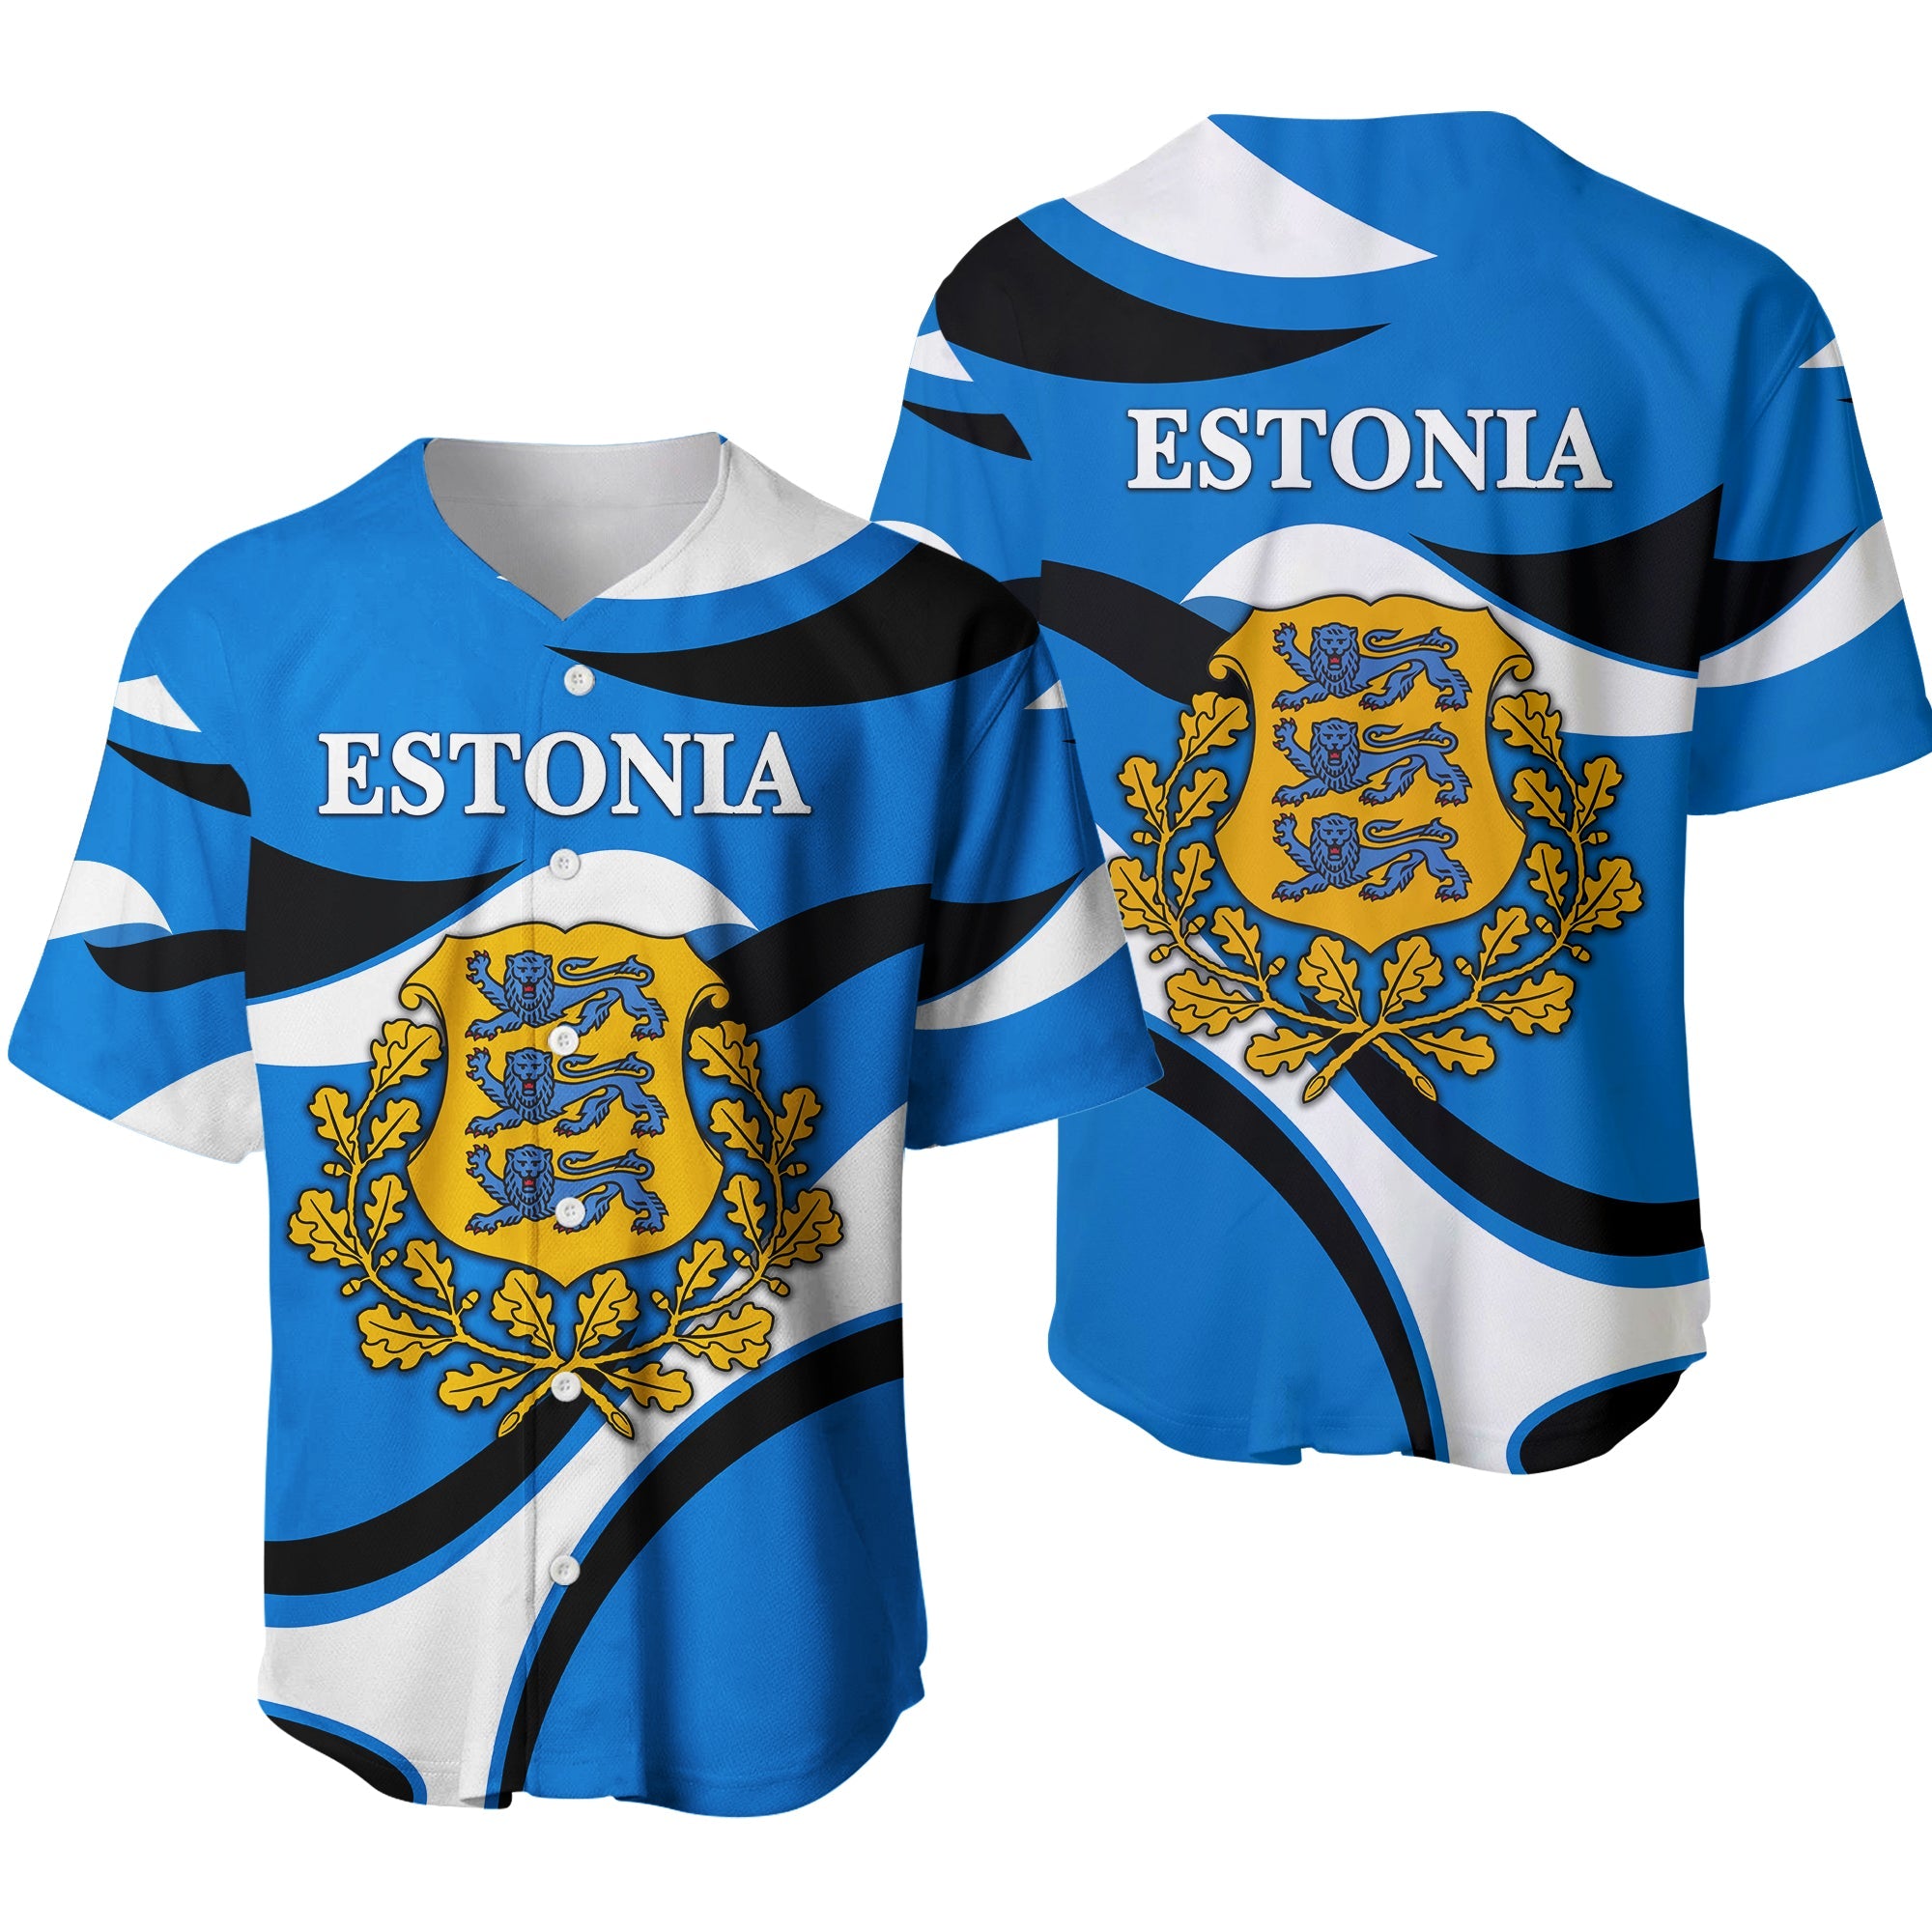 estonia-baseball-jersey-sporty-style